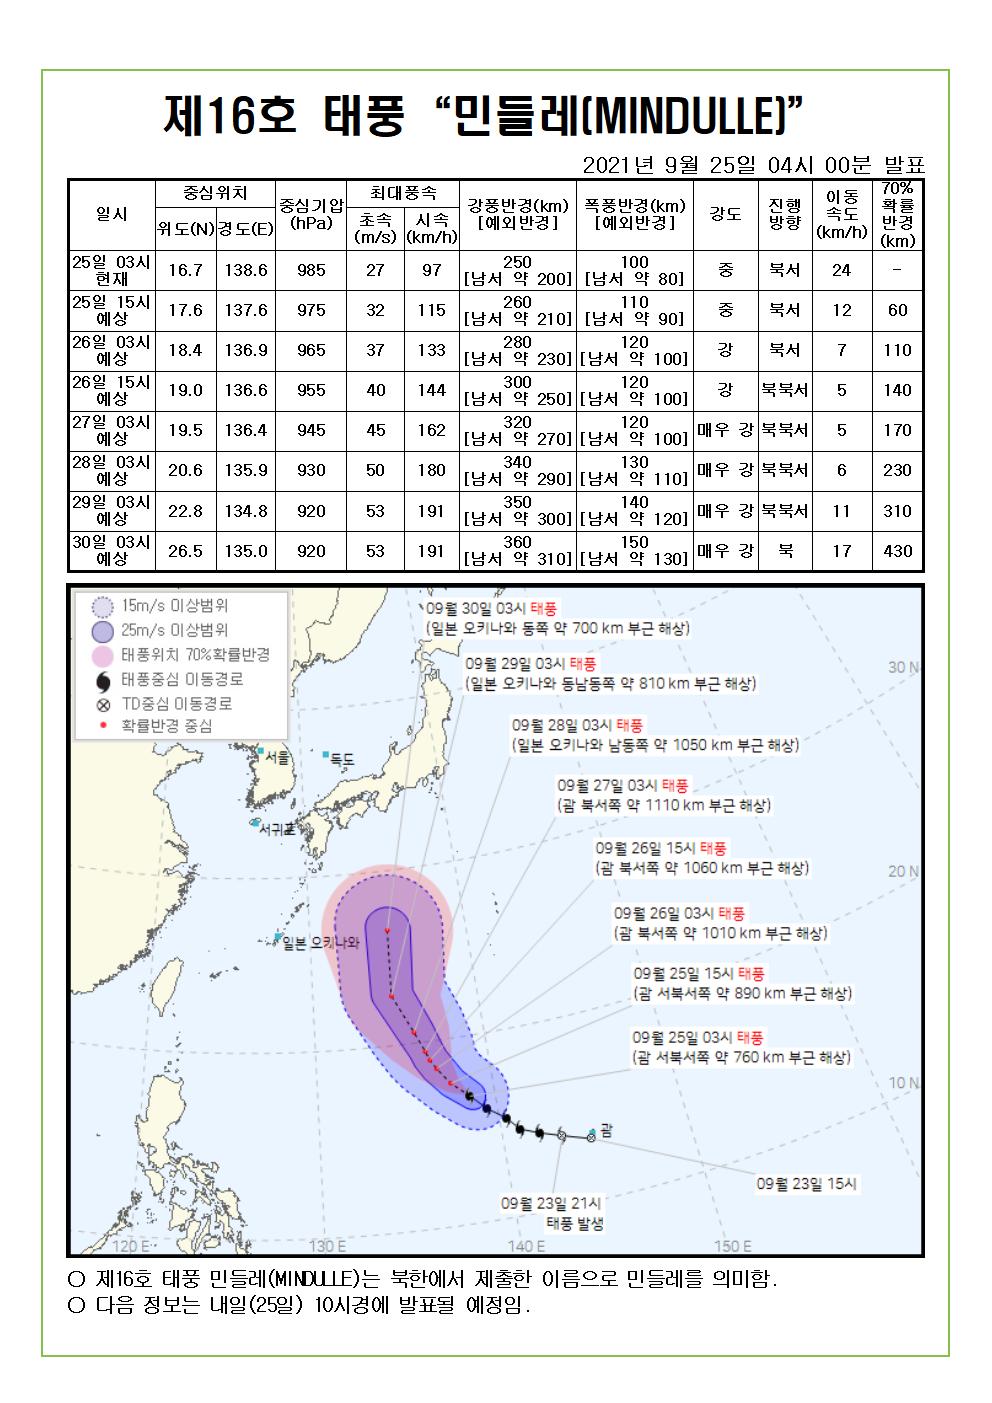 제16호 태풍 민들레 예상진로도 9월 25일(토) 04시00분 발표 